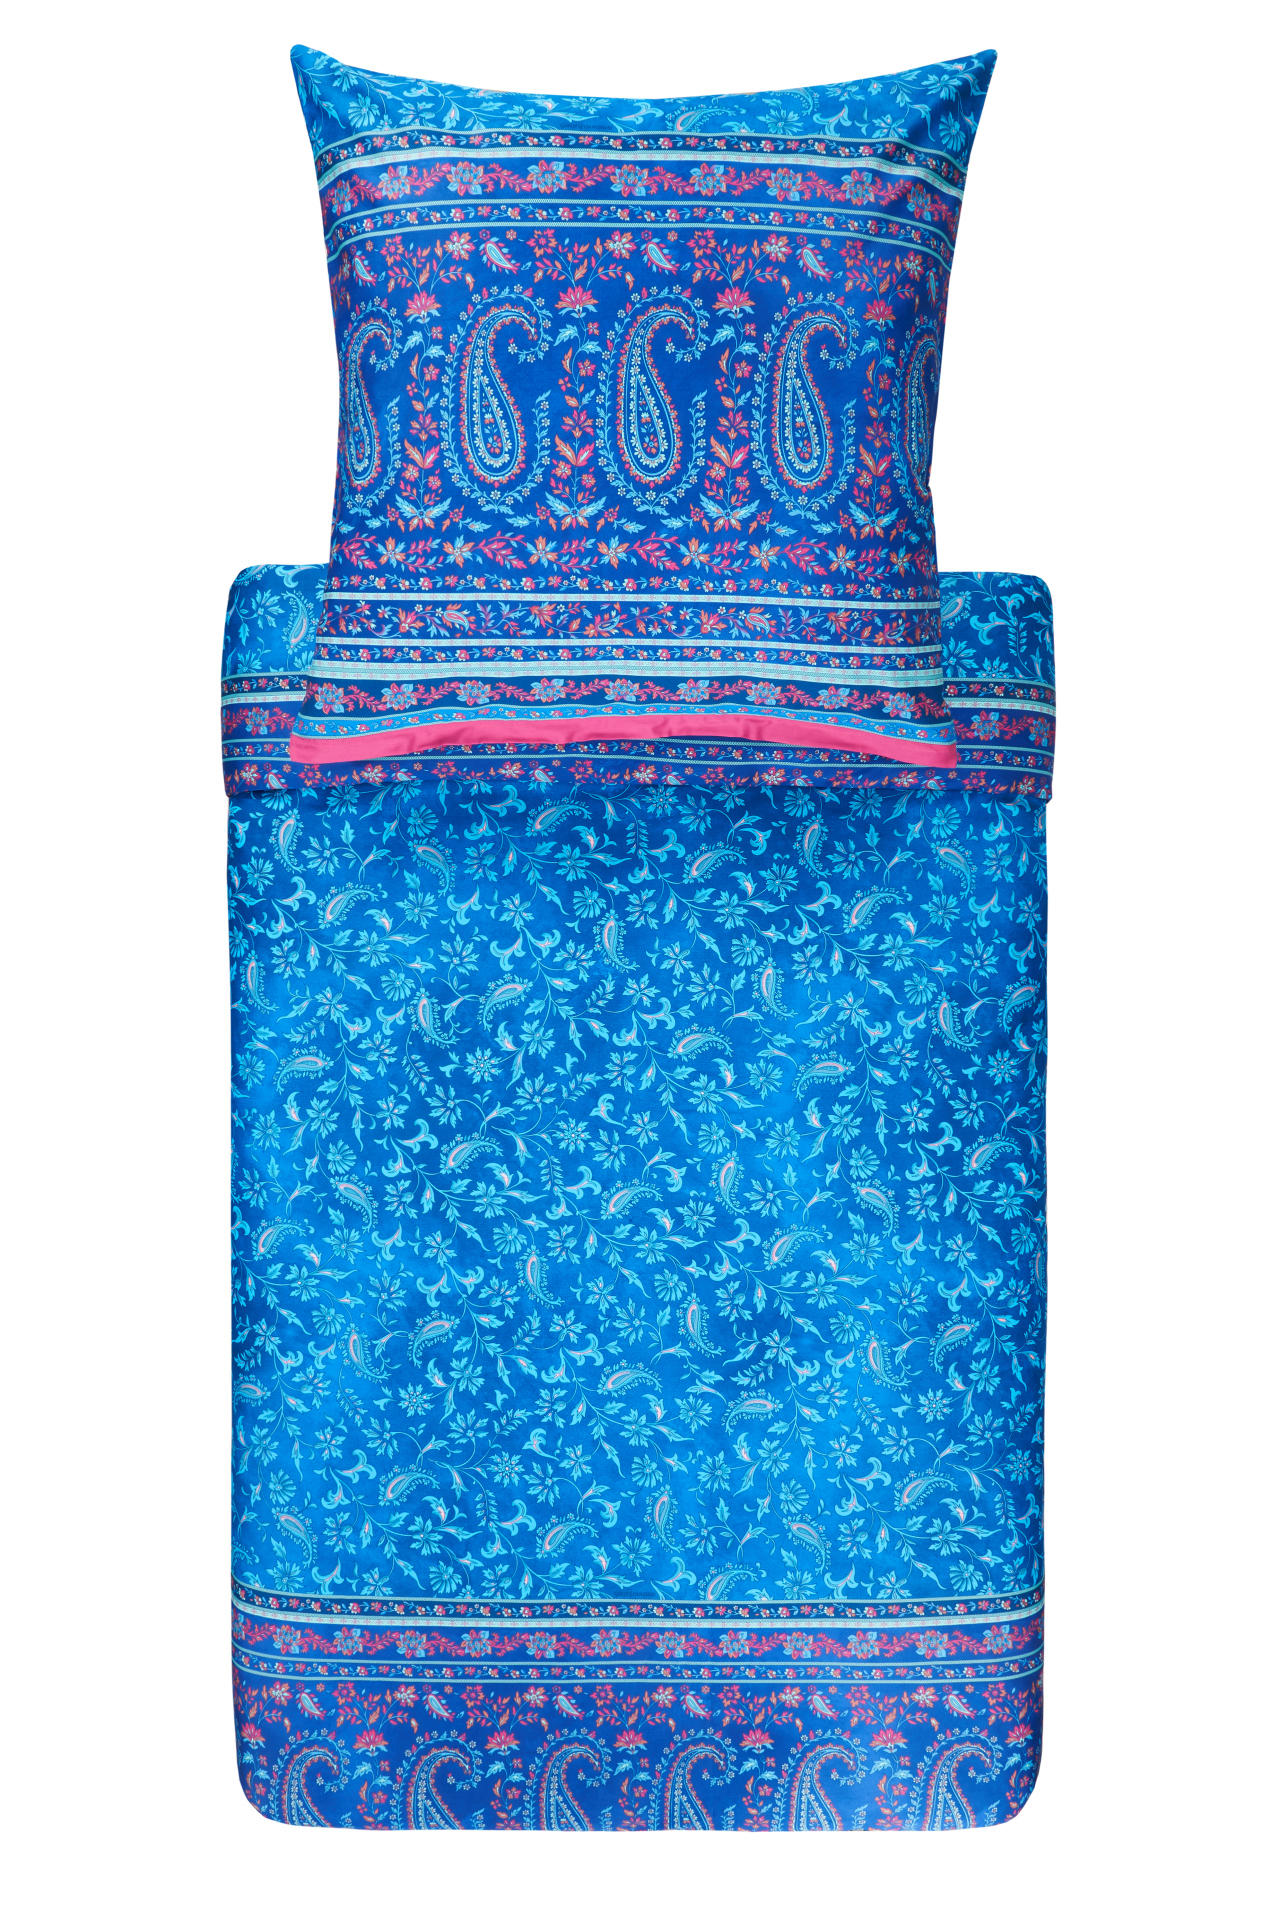 WENDEBETTWÄSCHE COMO  - Blau, LIFESTYLE, Textil (135/200cm) - Bassetti